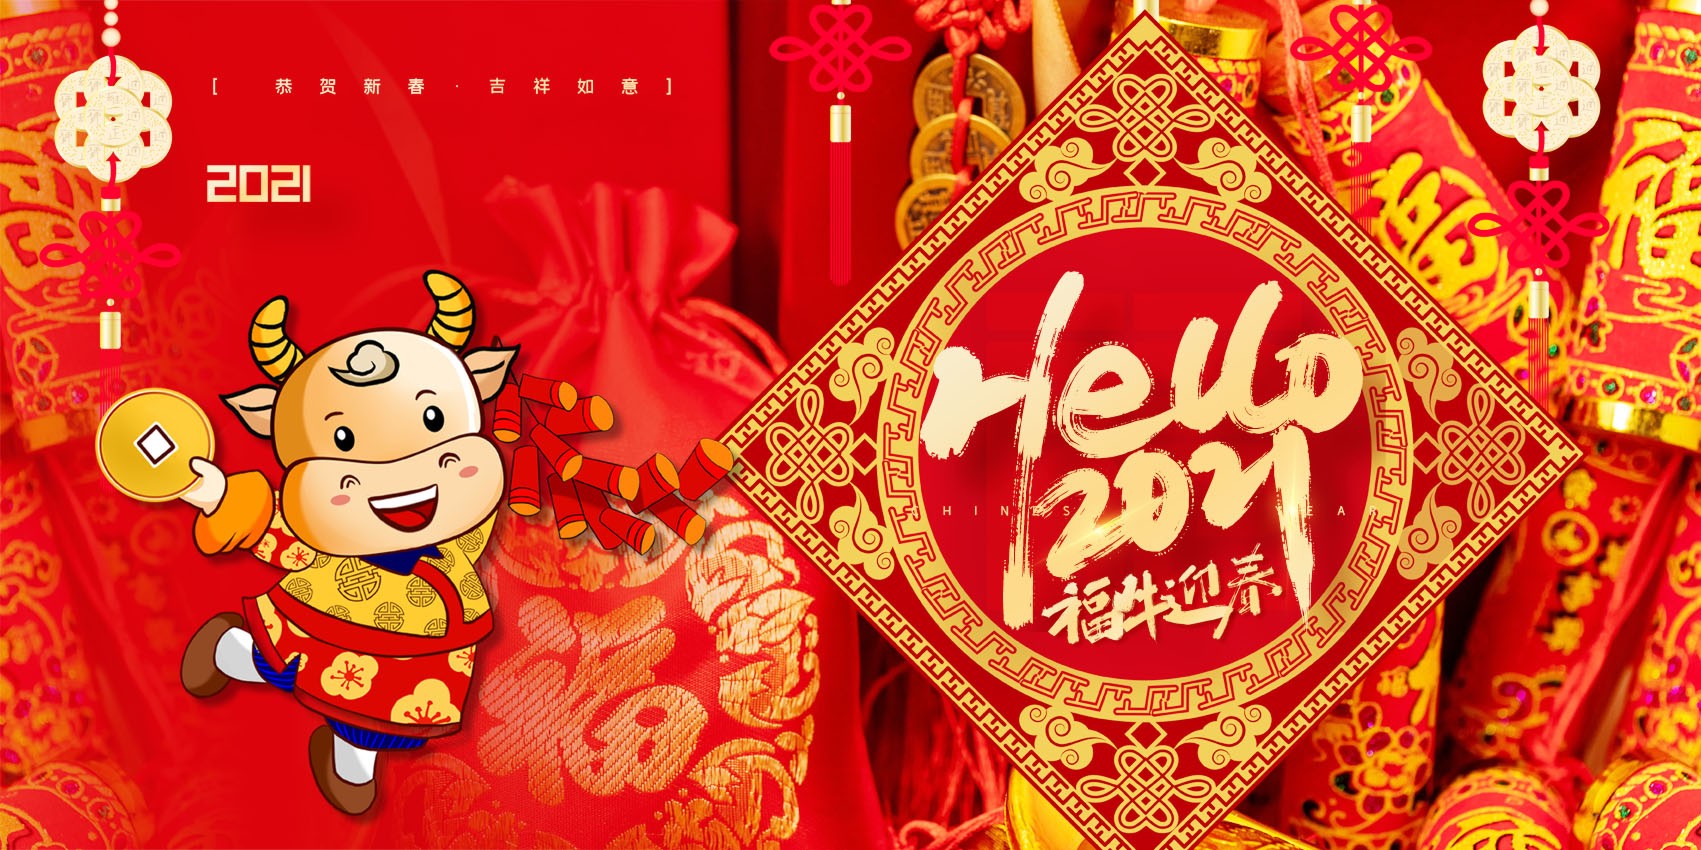 770新年快乐春节日2021牛年大吉喜庆贴画263海报印制展板写真喷绘